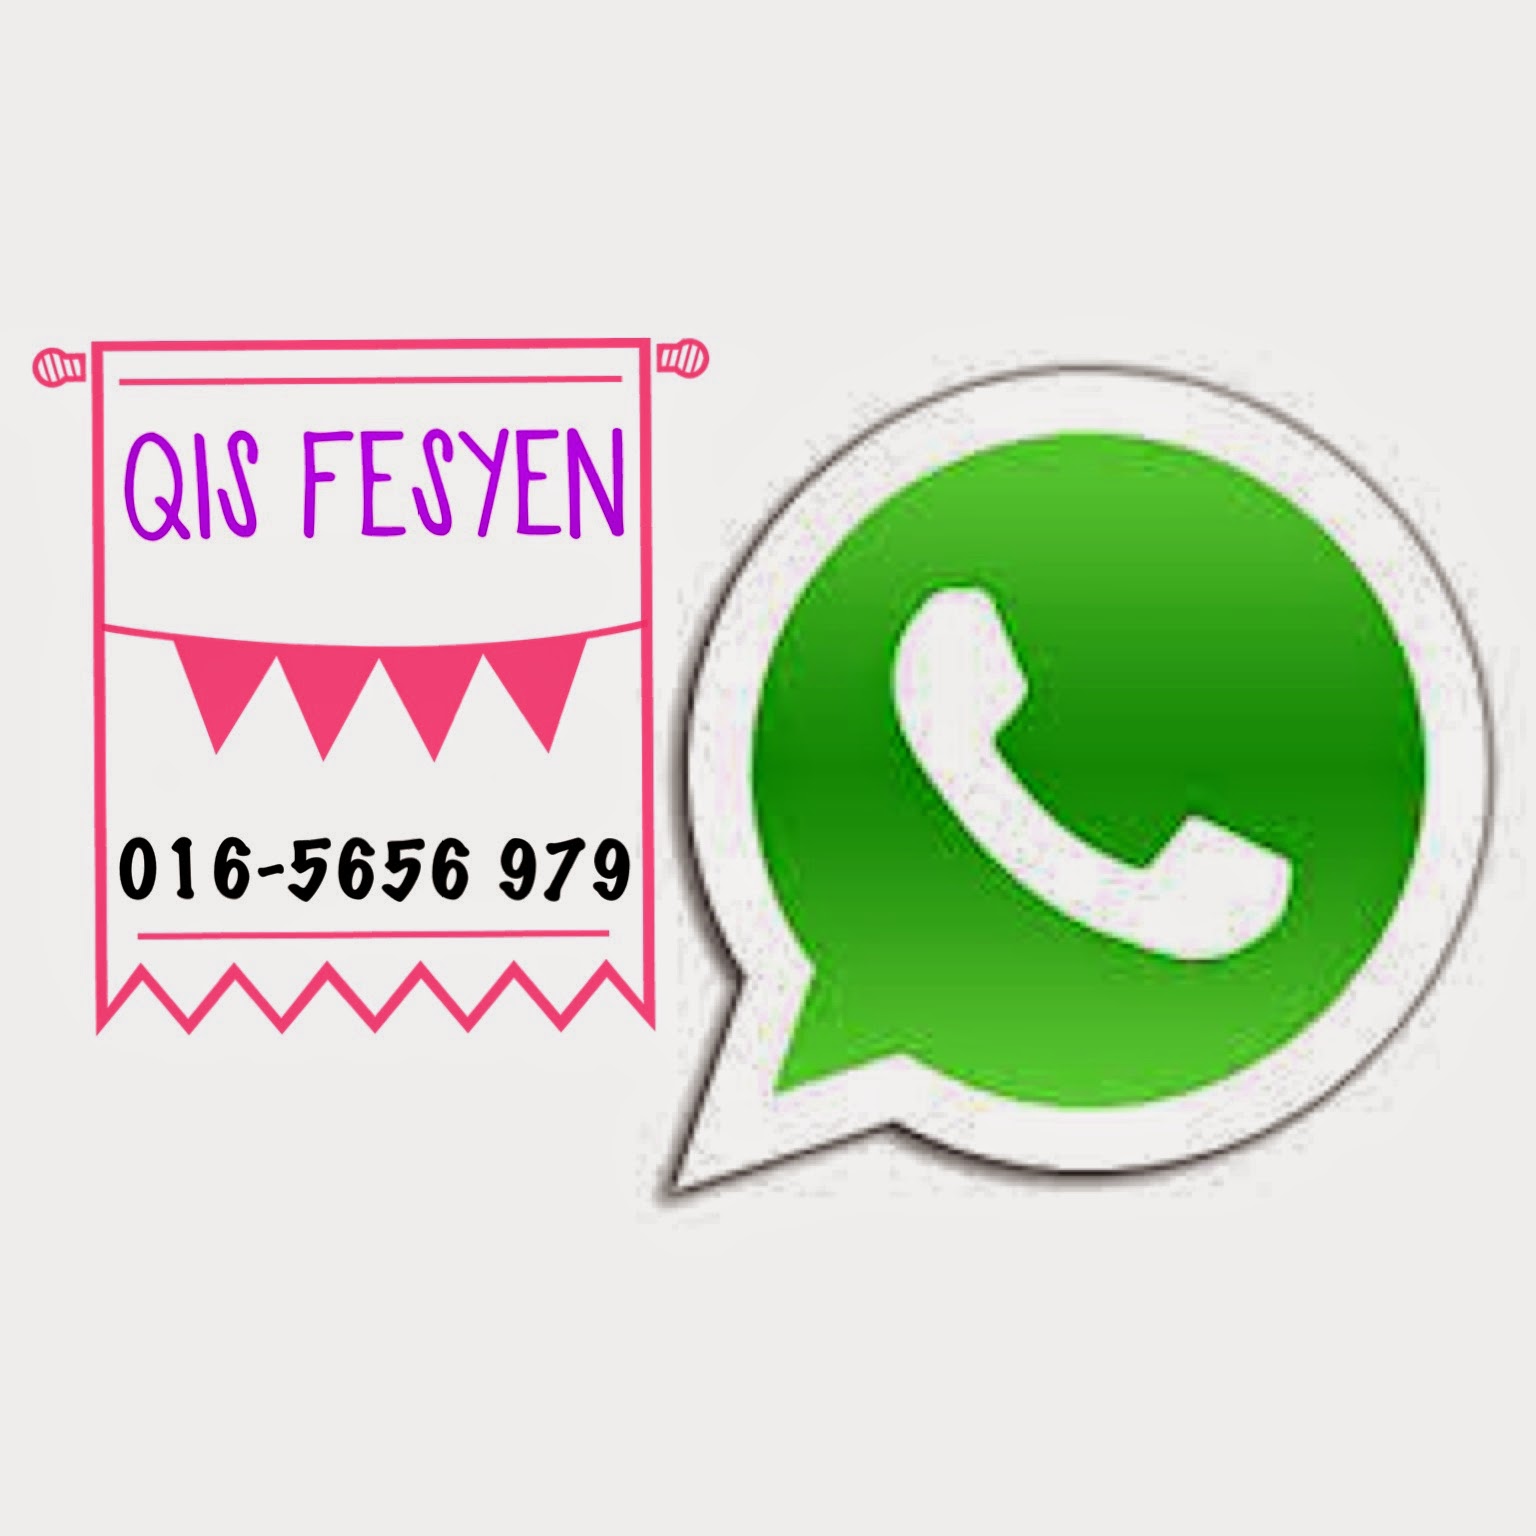 Whatsapp Qis Fesyen